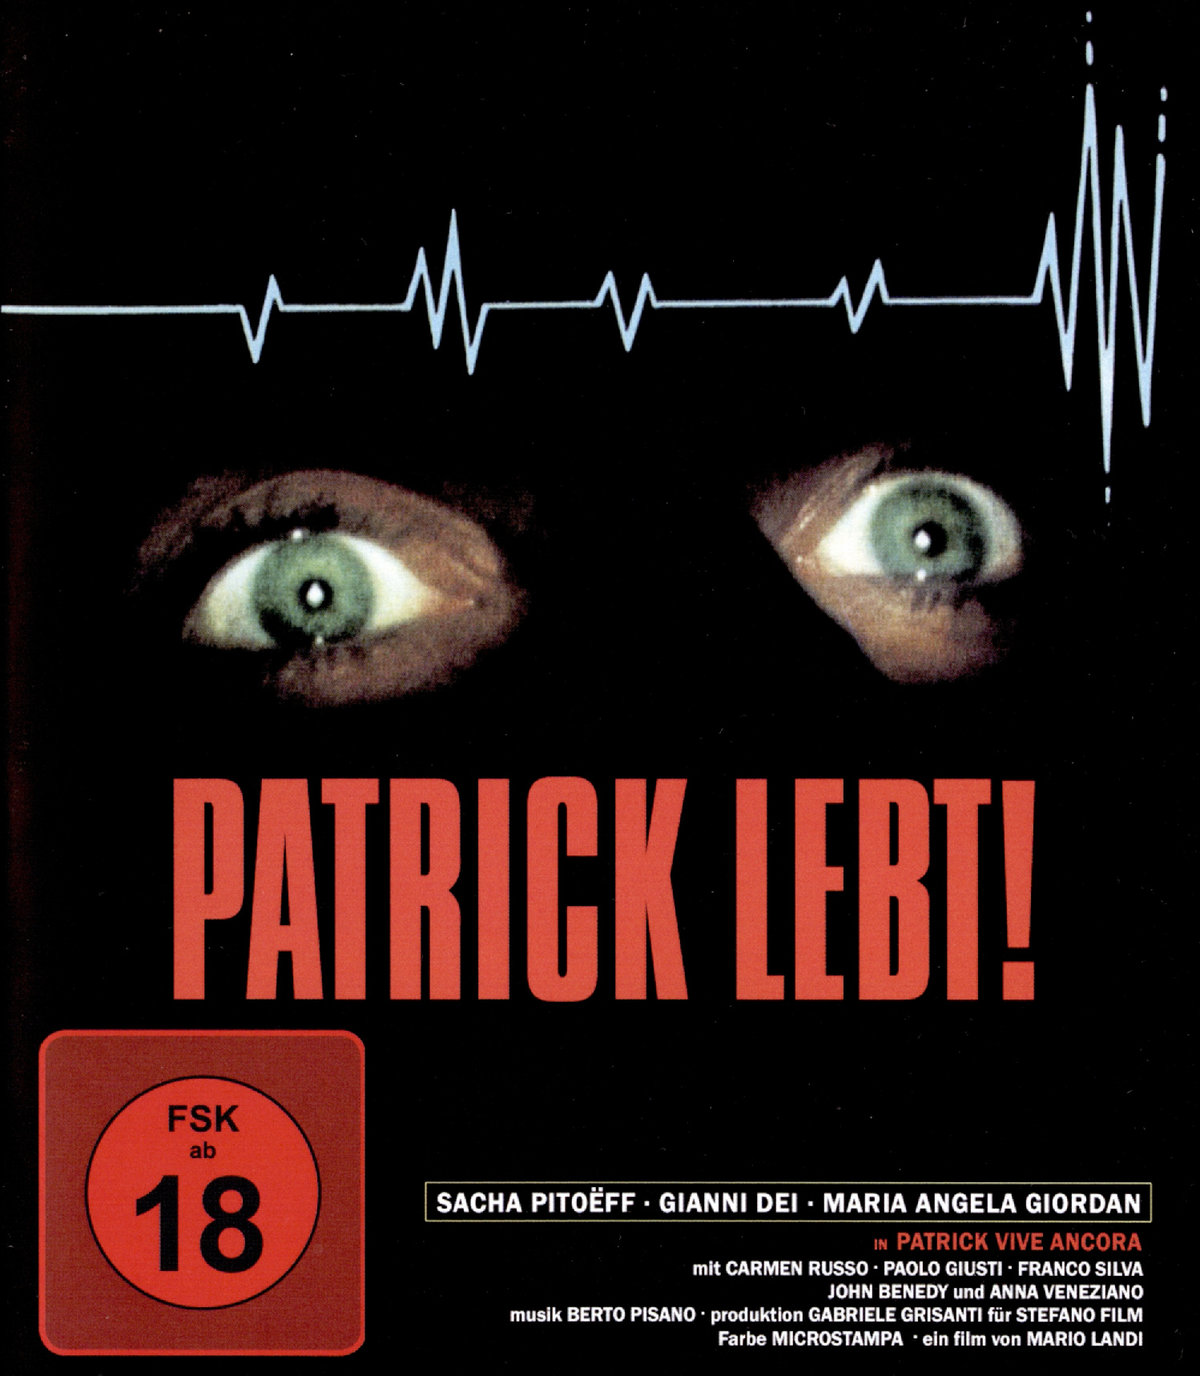 Patrick lebt  - Uncut Edition  (blu-ray) 